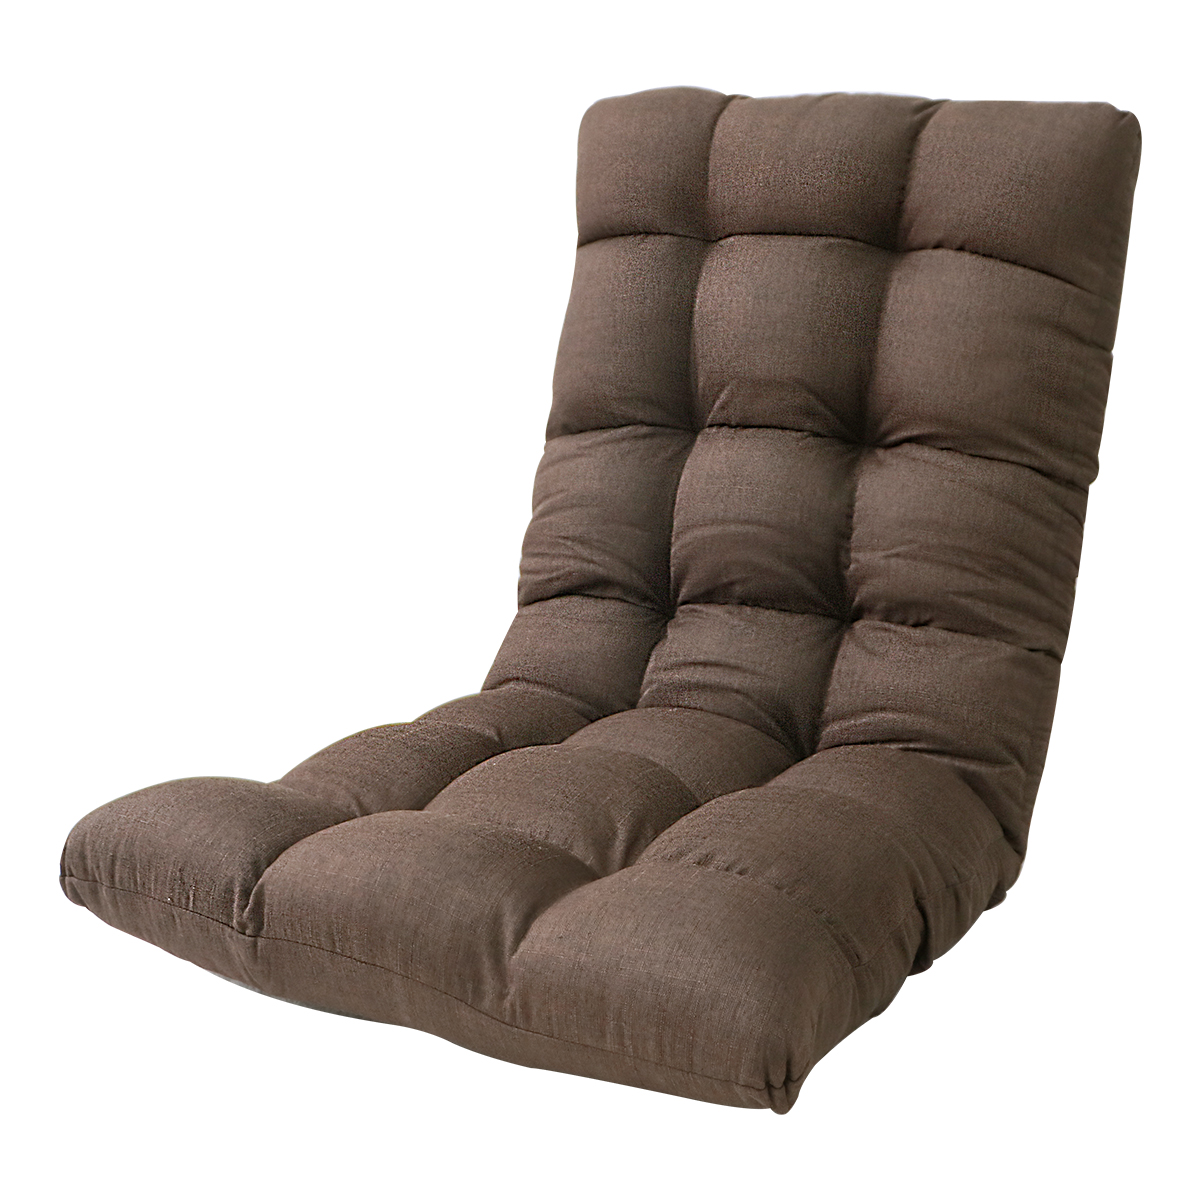 座椅子 コンパクト ハイバック リクライニング ソファー 座いす 一人掛けソファ KOYO製 日本製